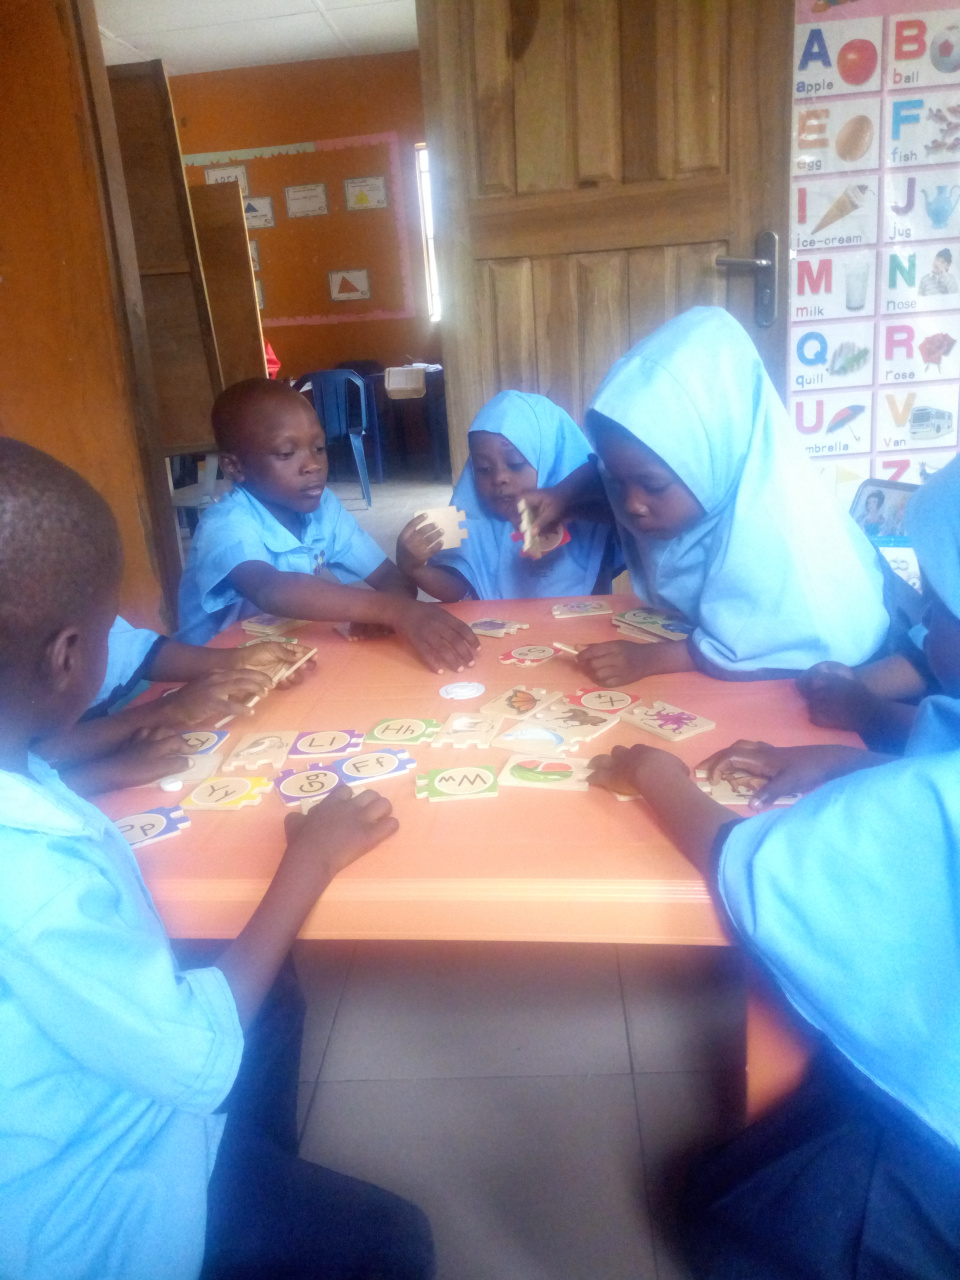 Children of Headstart Muslim Children's School working on puzzles